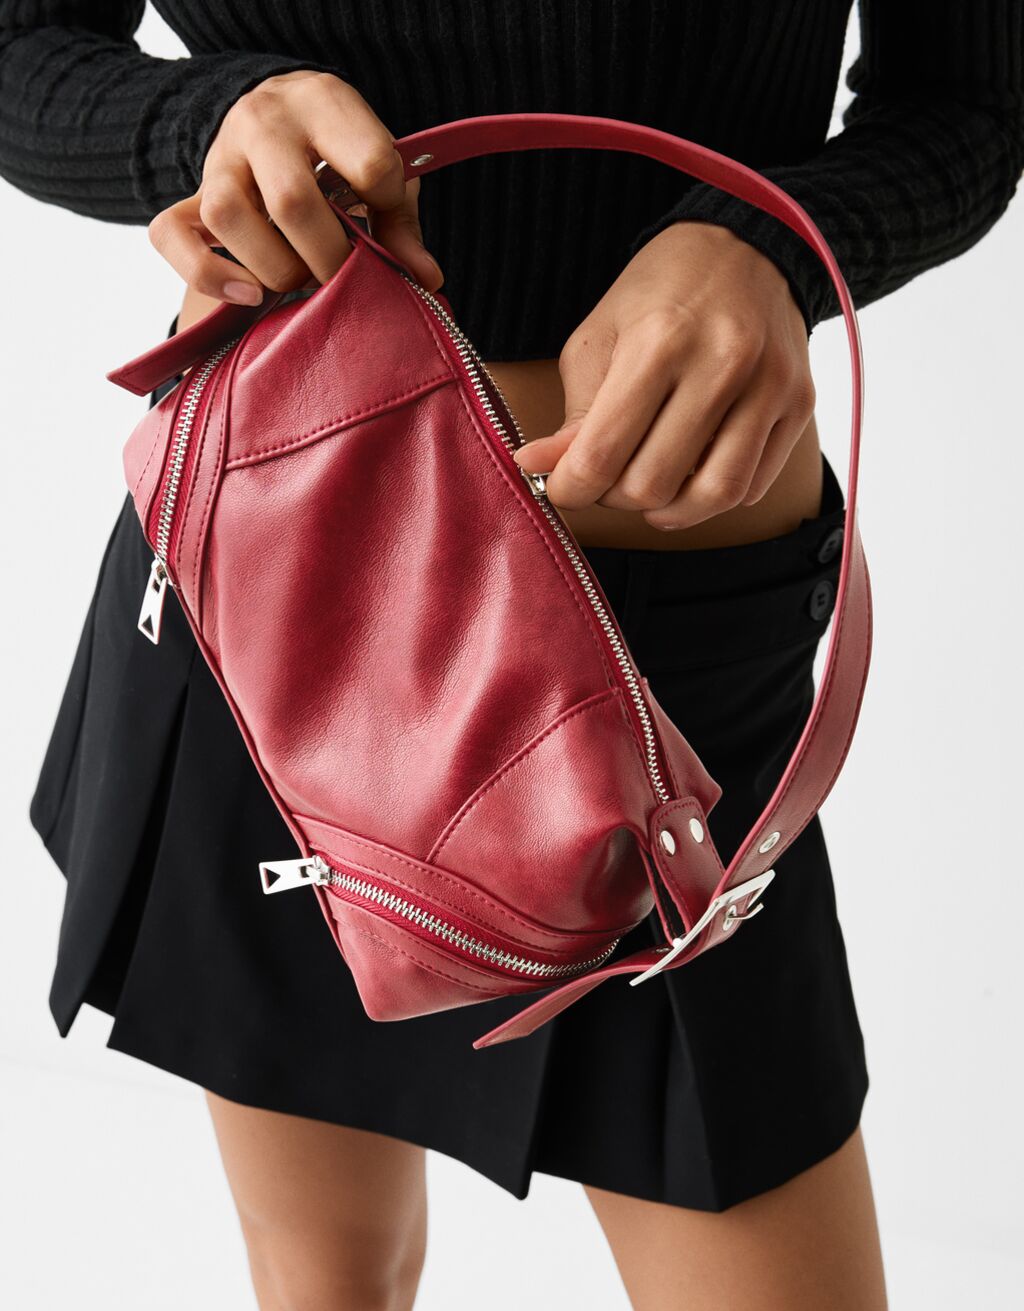 Shoulder bag with zips - Accessories - Women | Bershka